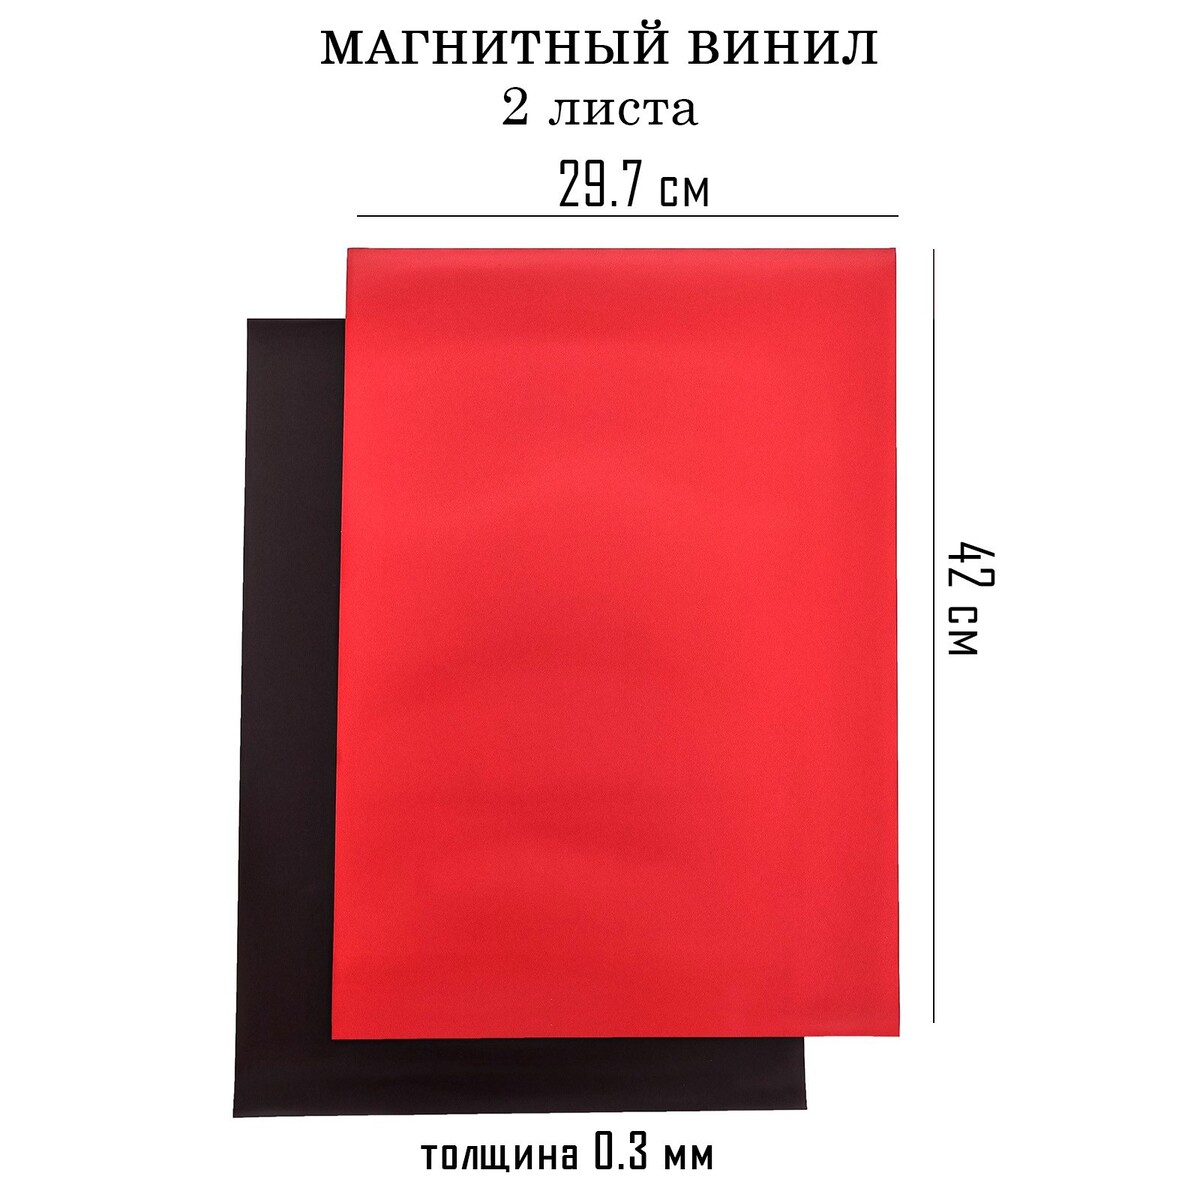 Магнитный винил, с пвх поверхностью, а3, 2 шт, толщина 0.3 мм, 42 х 29.7 см, красный иппликатор массажер кузнецова на мягкой подложке магнитный красный 41х60 см